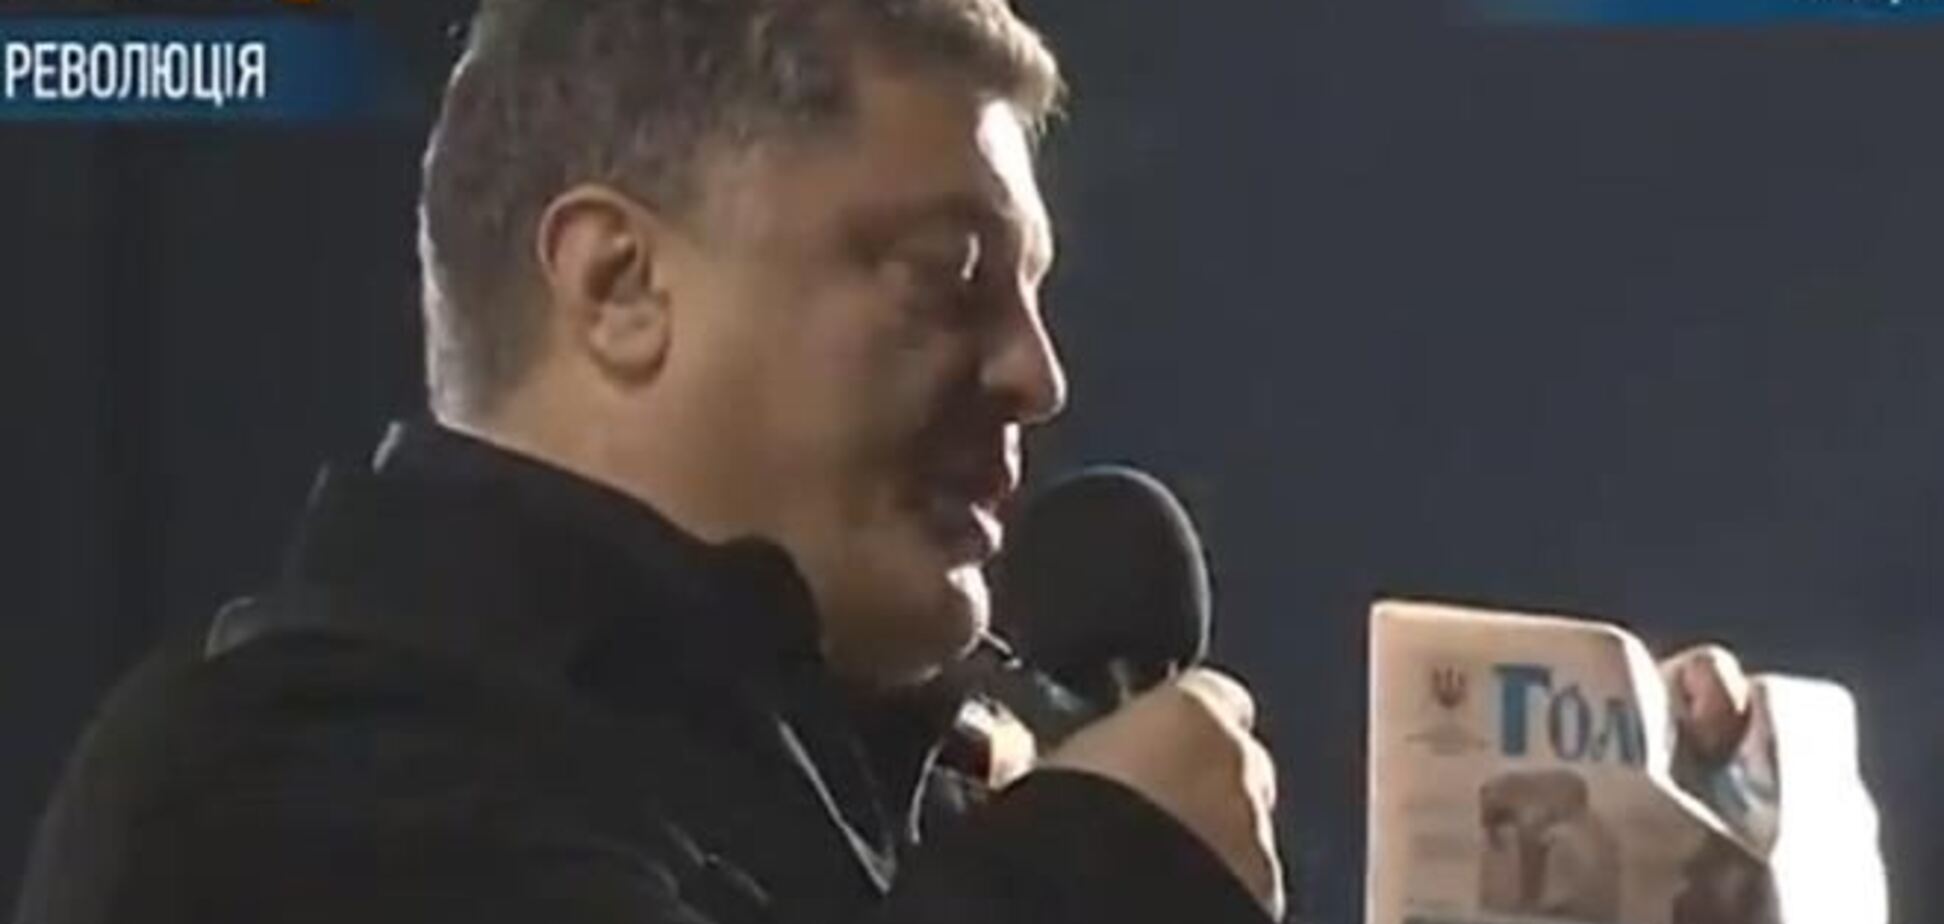 Порошенко презентовал и разбросал по Майдану свежий выпуск парламентской газеты